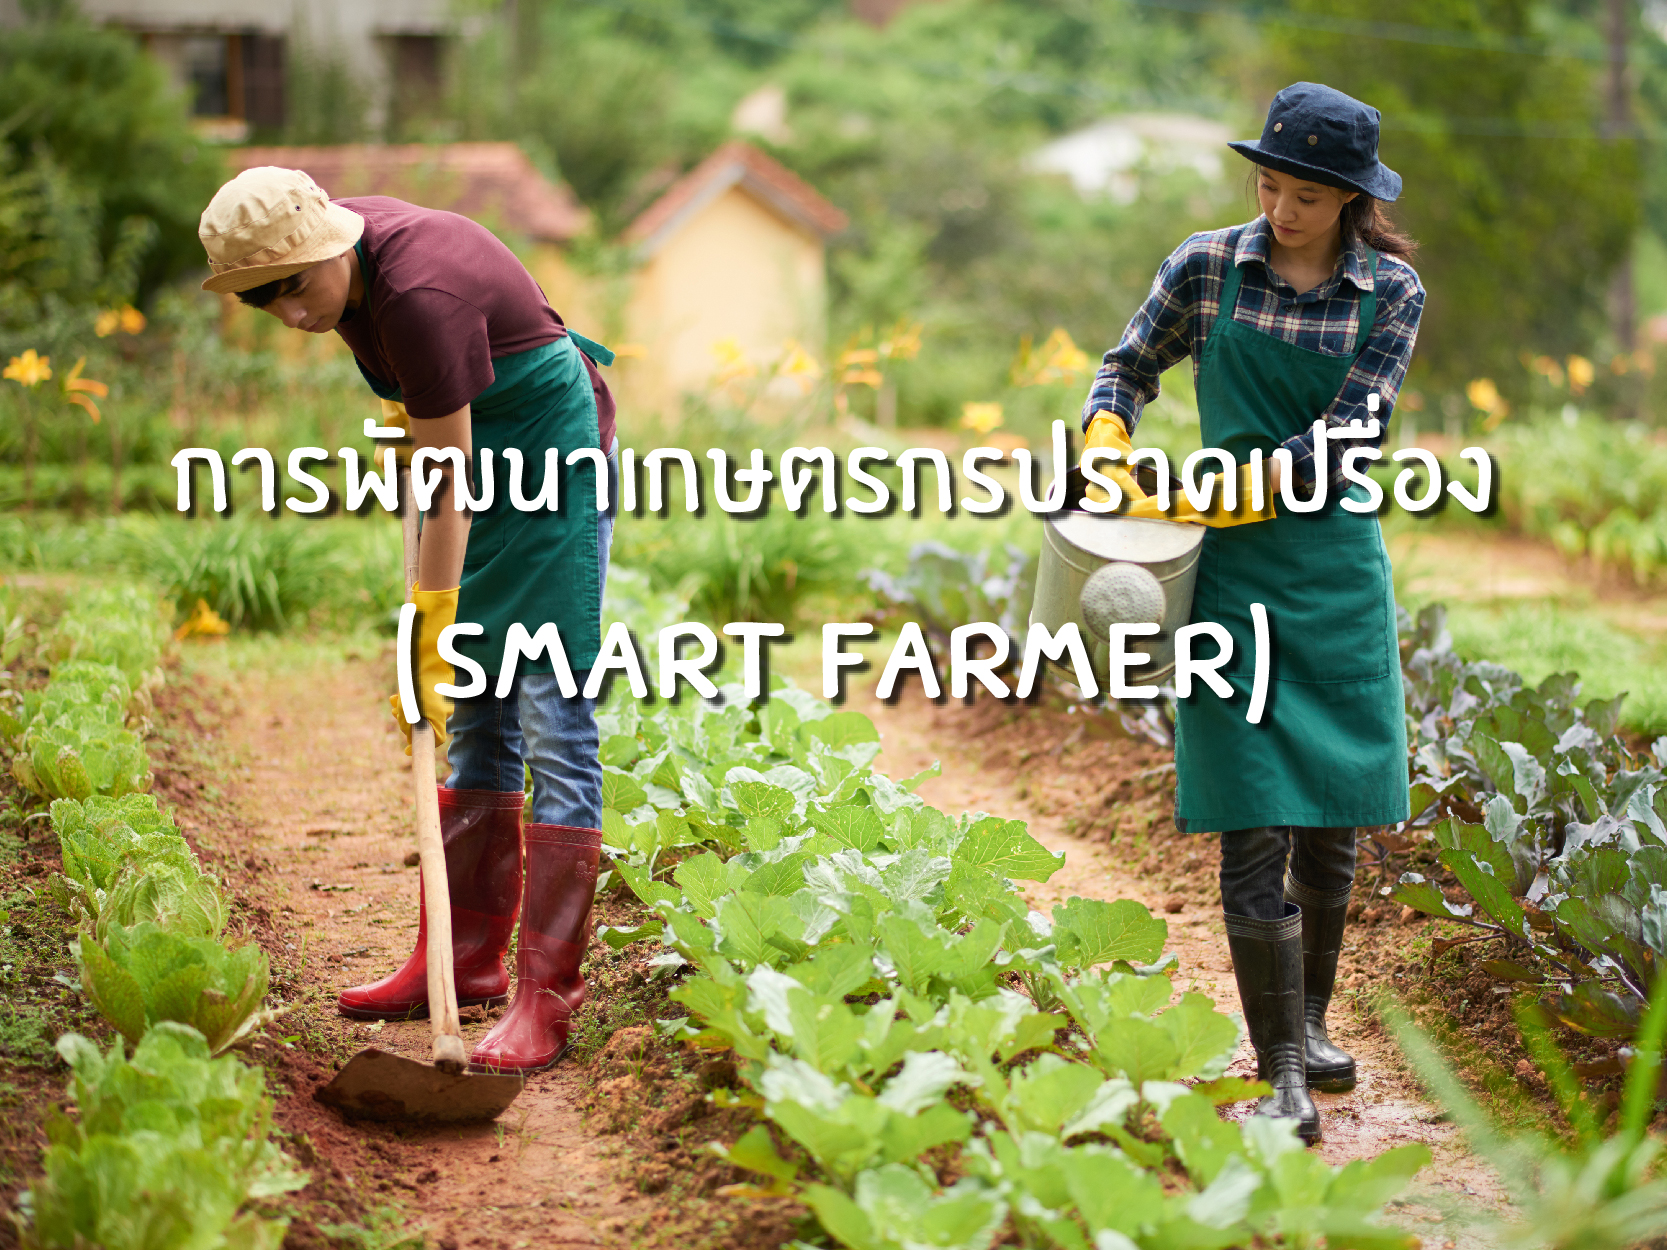 การพัฒนาเกษตรกรปราดเปรื่อง (Smart Farmer)